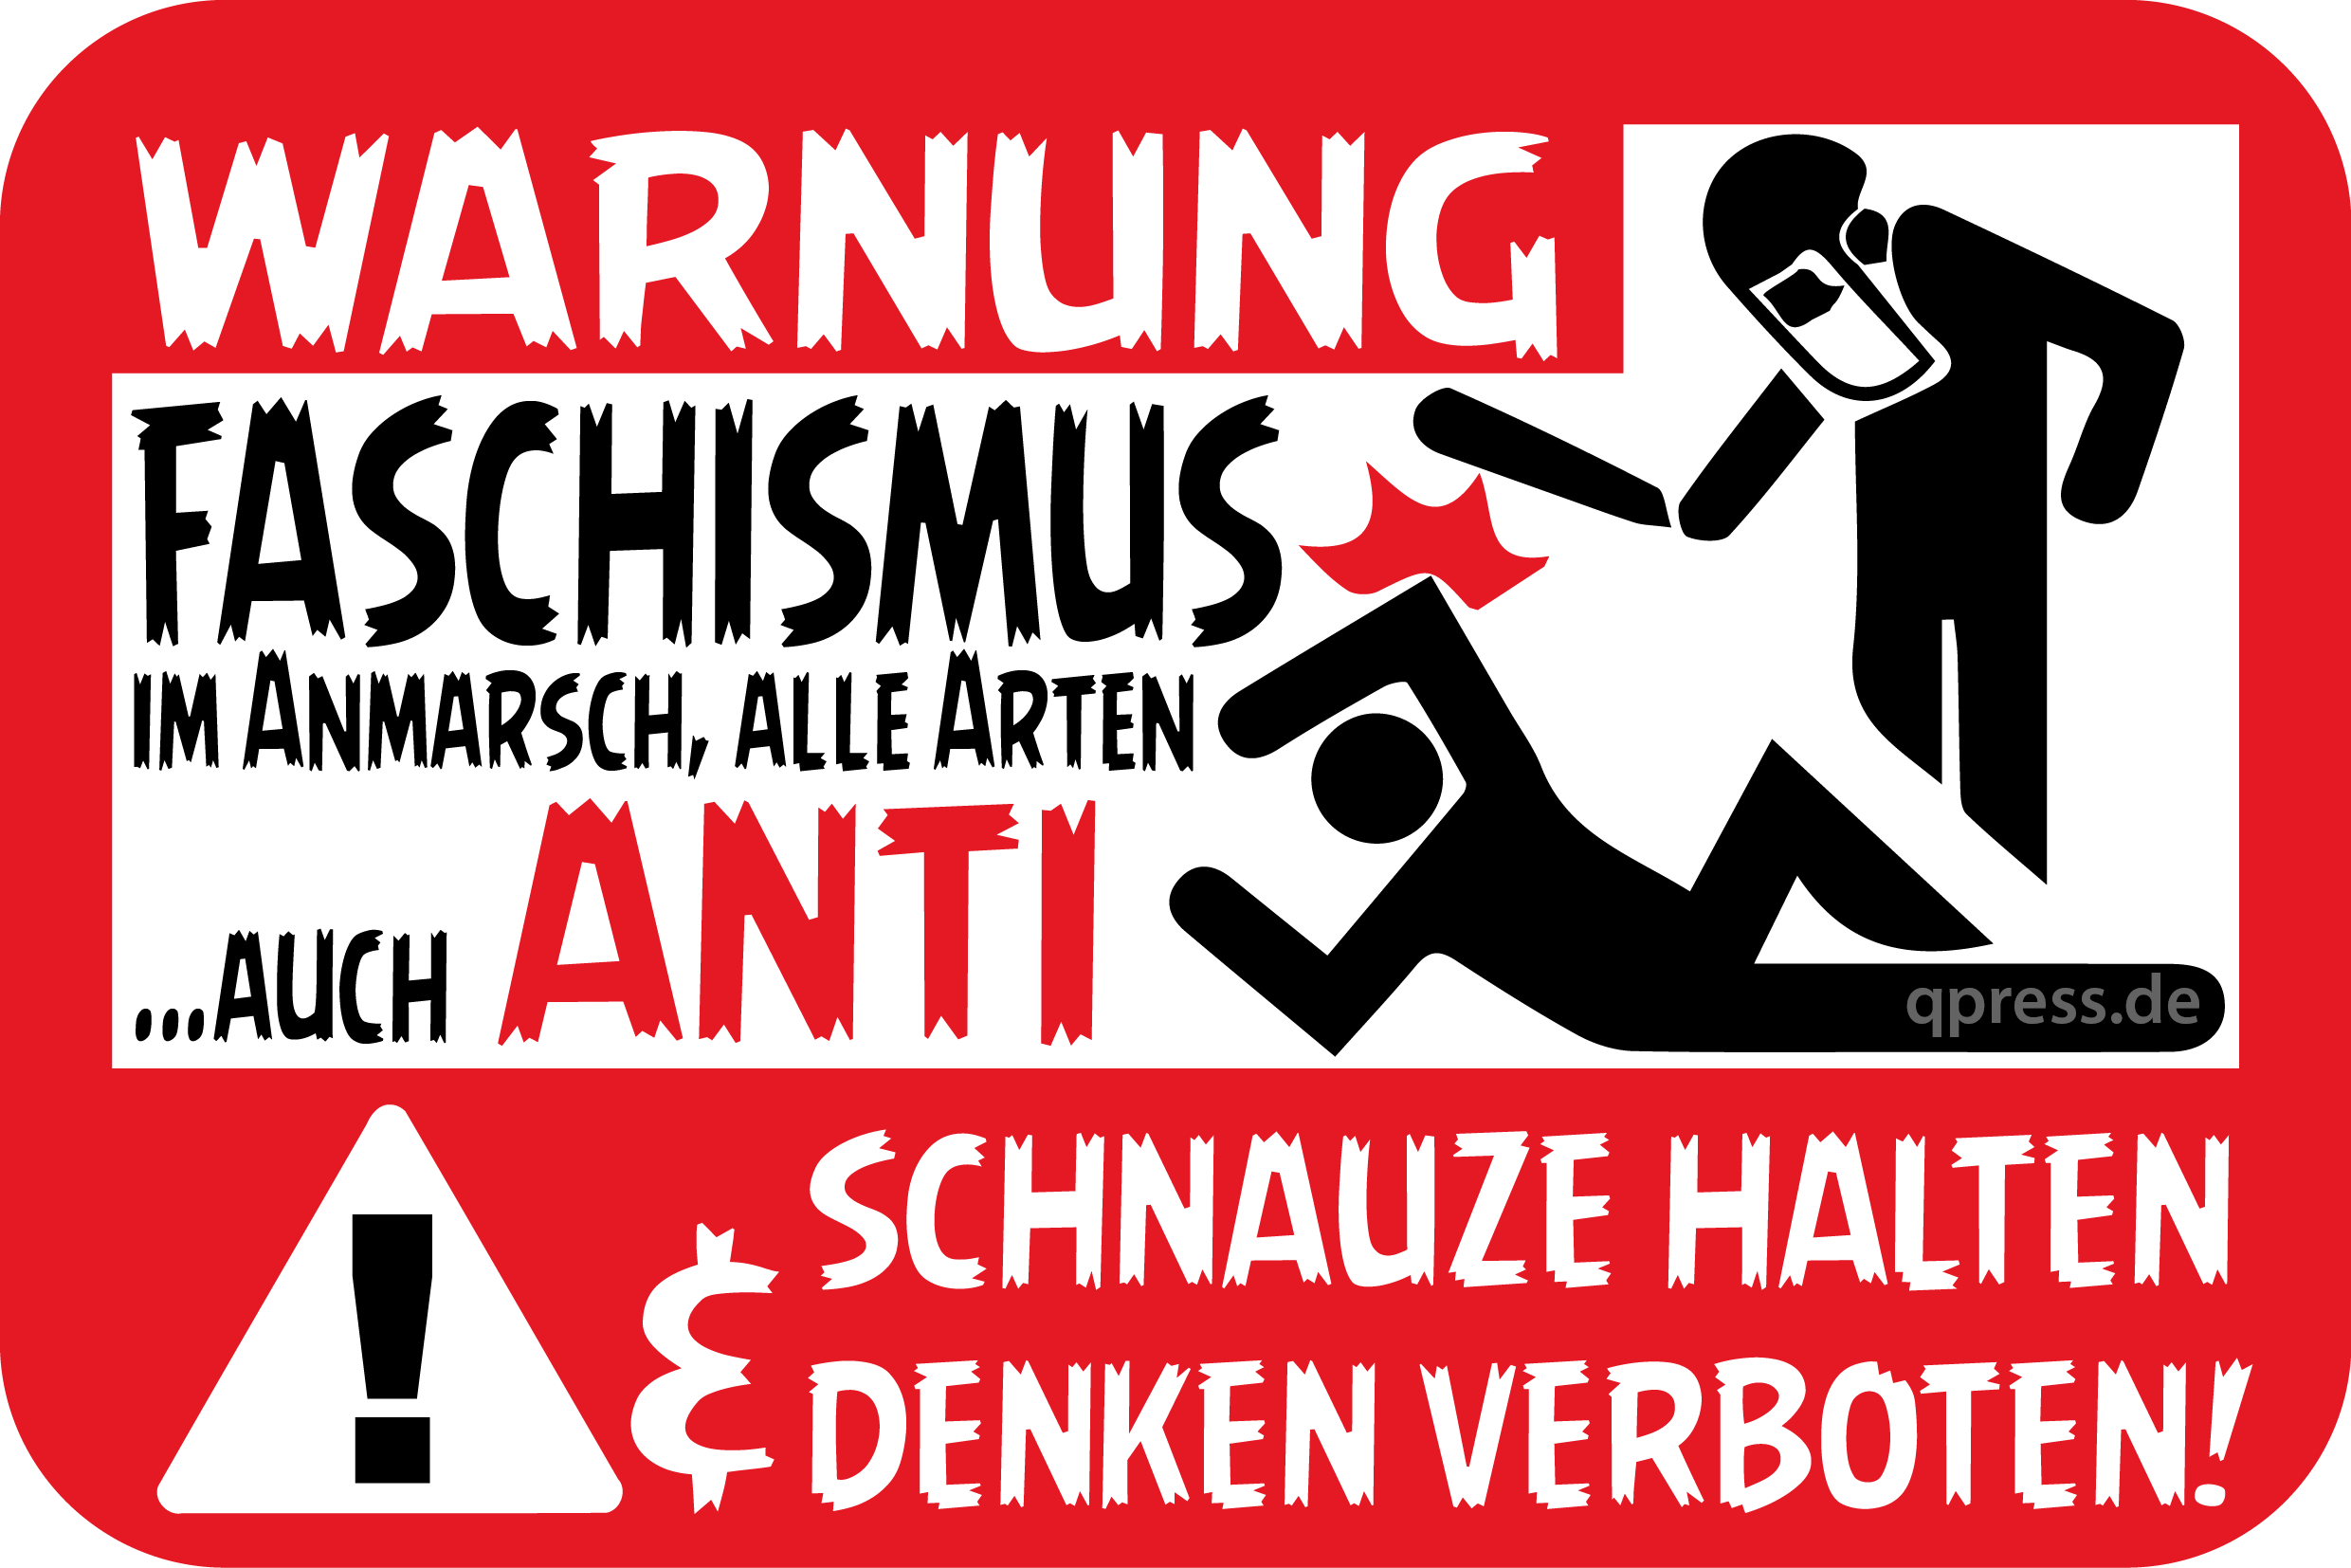 Warnung Faschismus Antifaschismus Denken verboten Schnauze halten-qpress